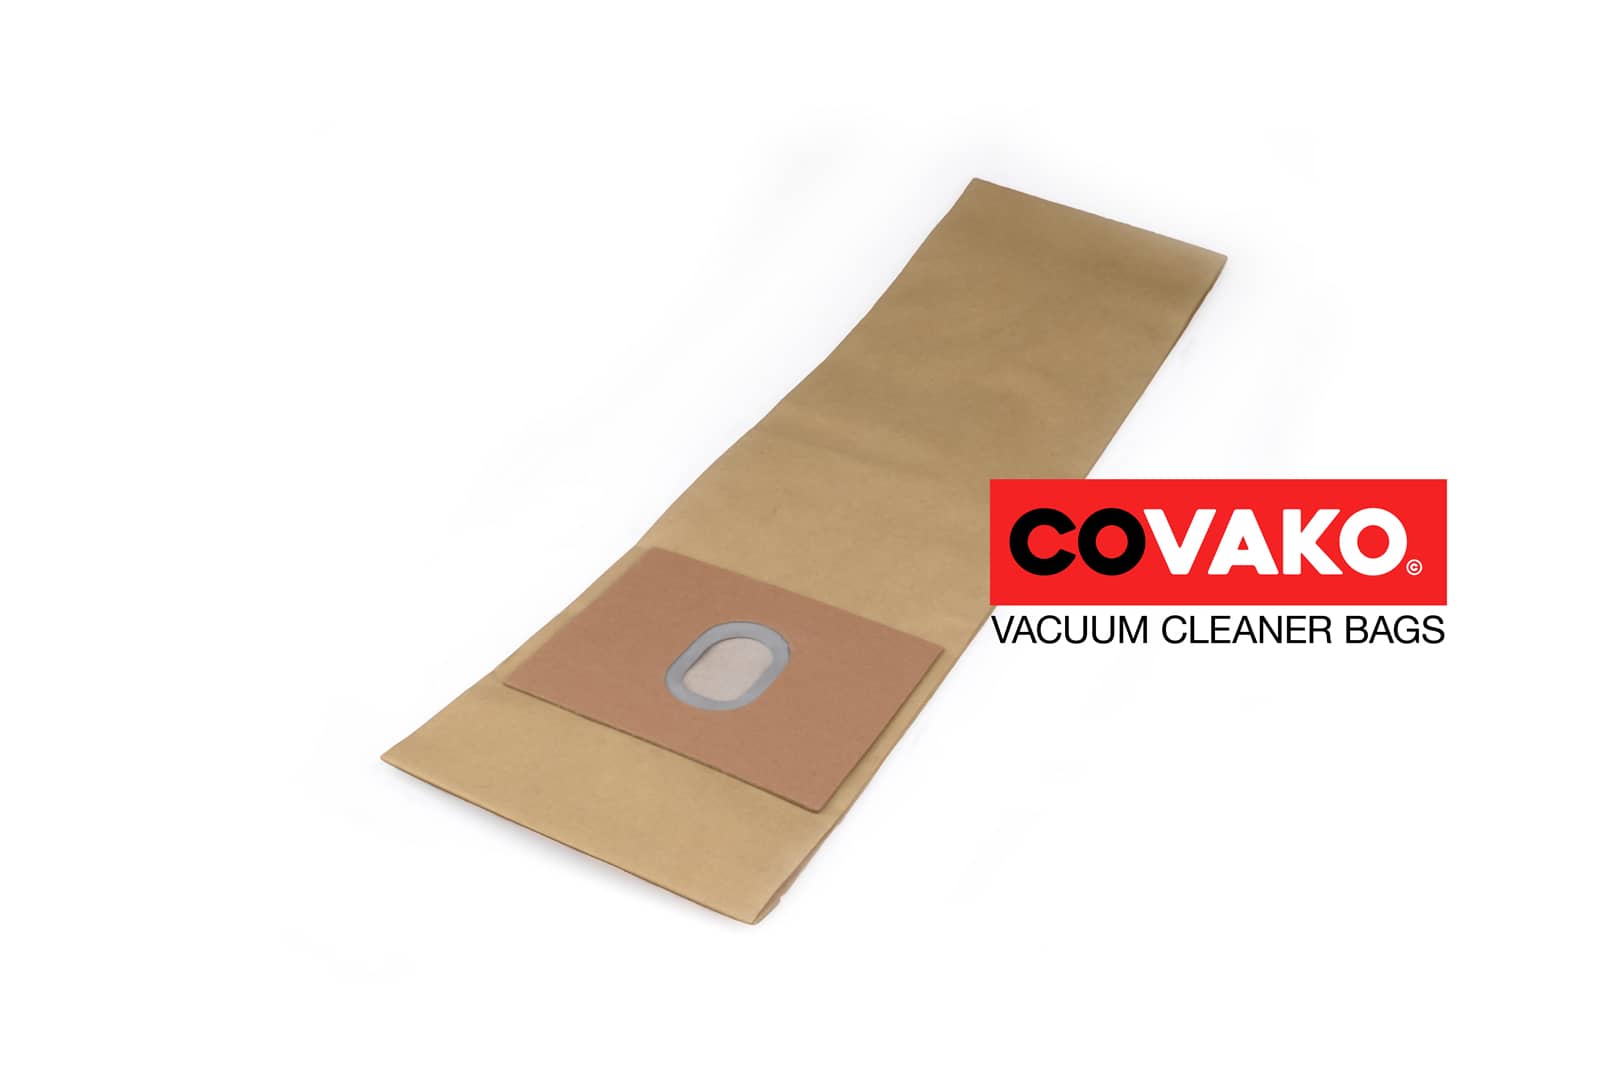 Fakir 271 / Paper - Fakir vacuum cleaner bags